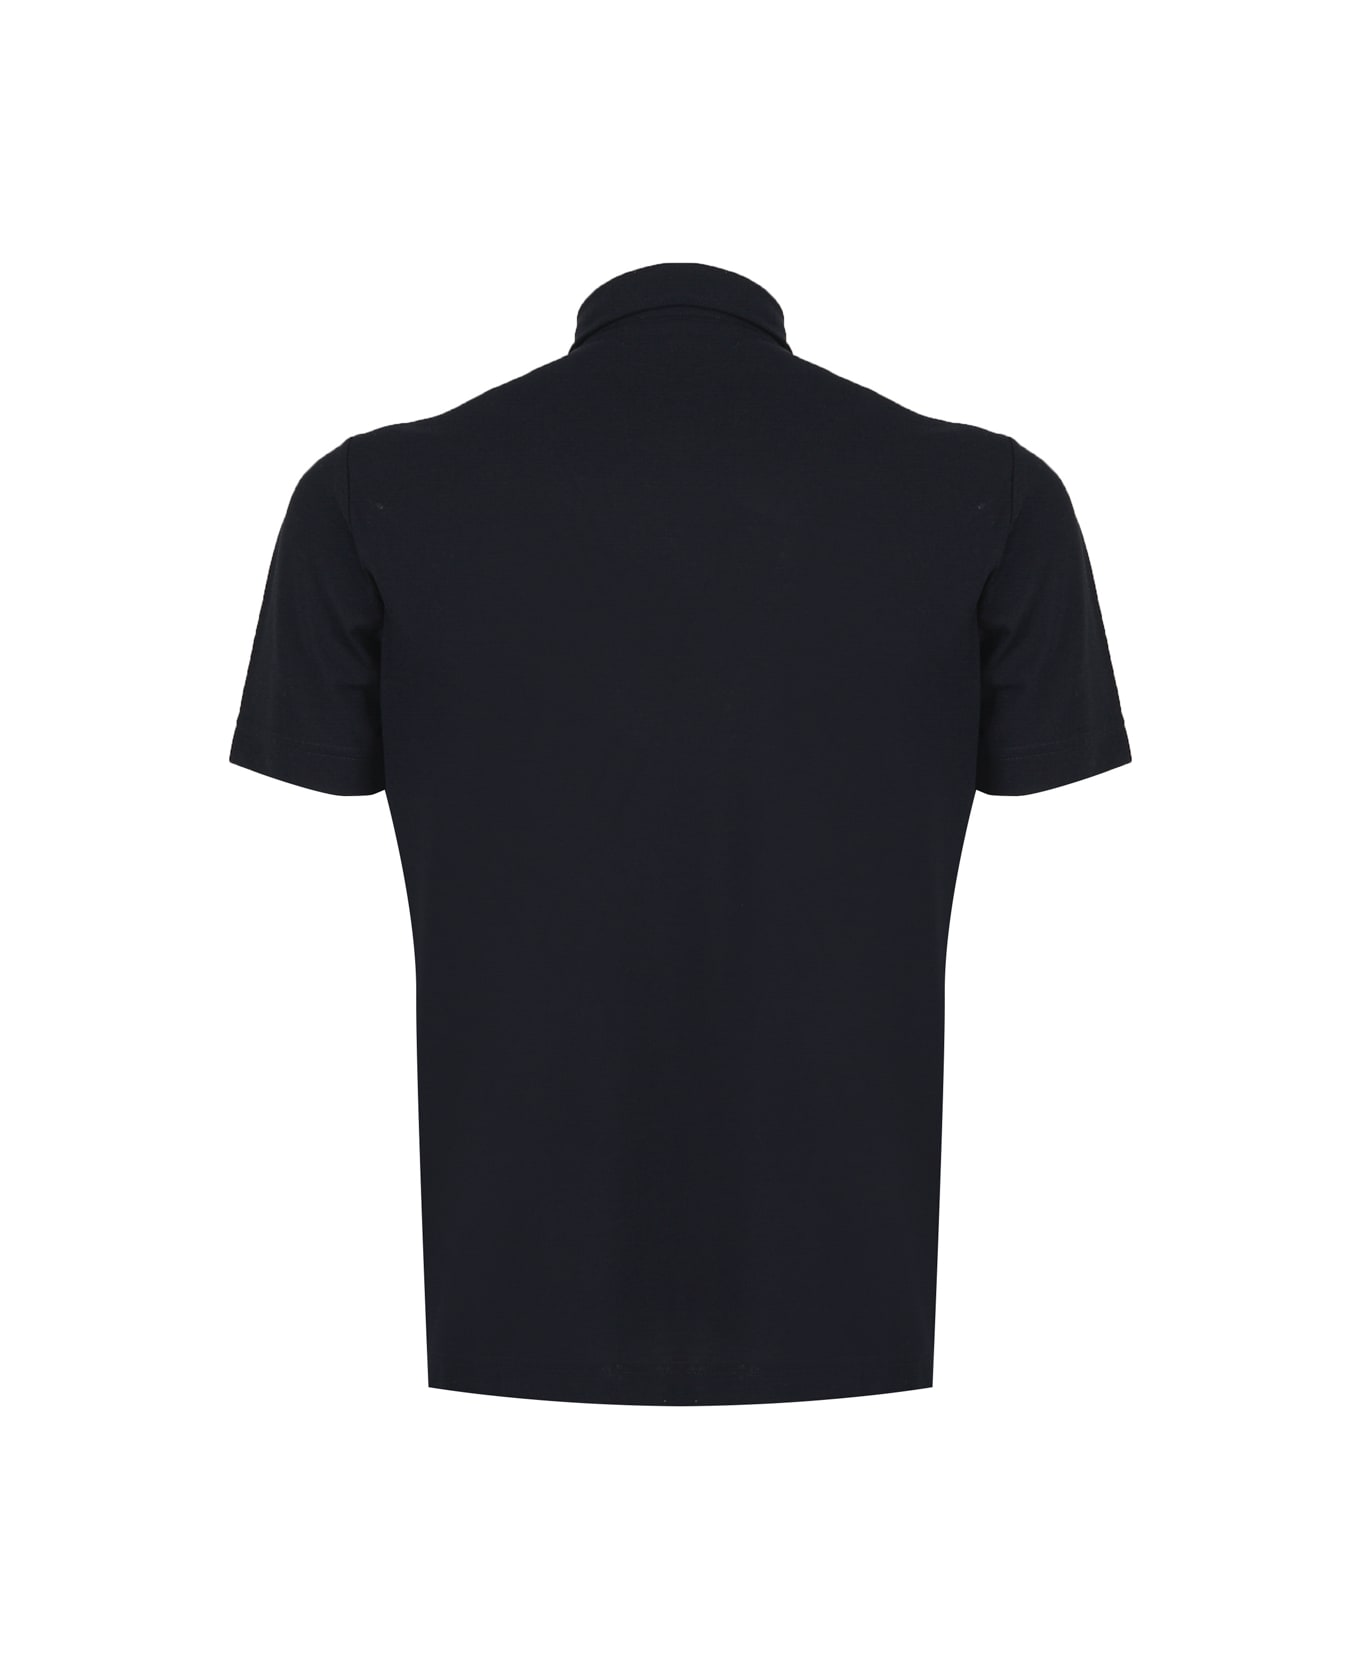 Zanone Polo Shirt In Cotton - Black